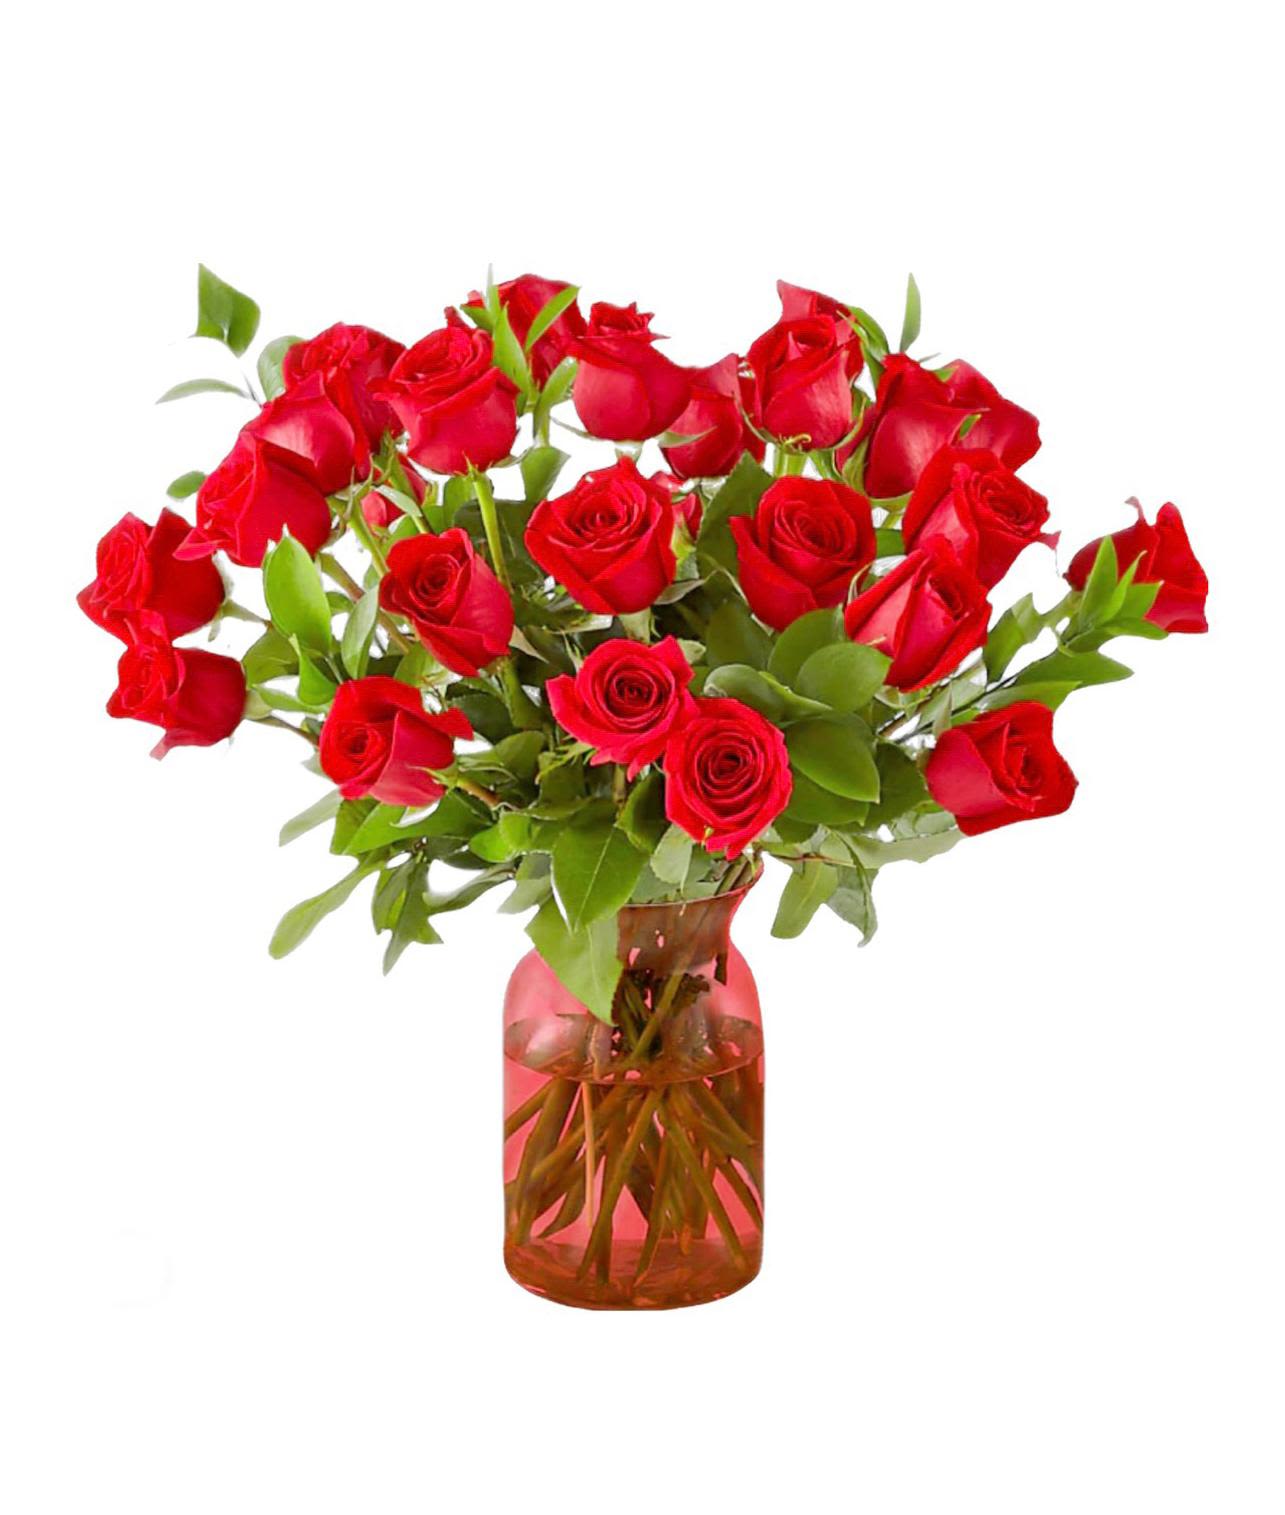 Full romance - 24 roses in a burgundy crystal vase 